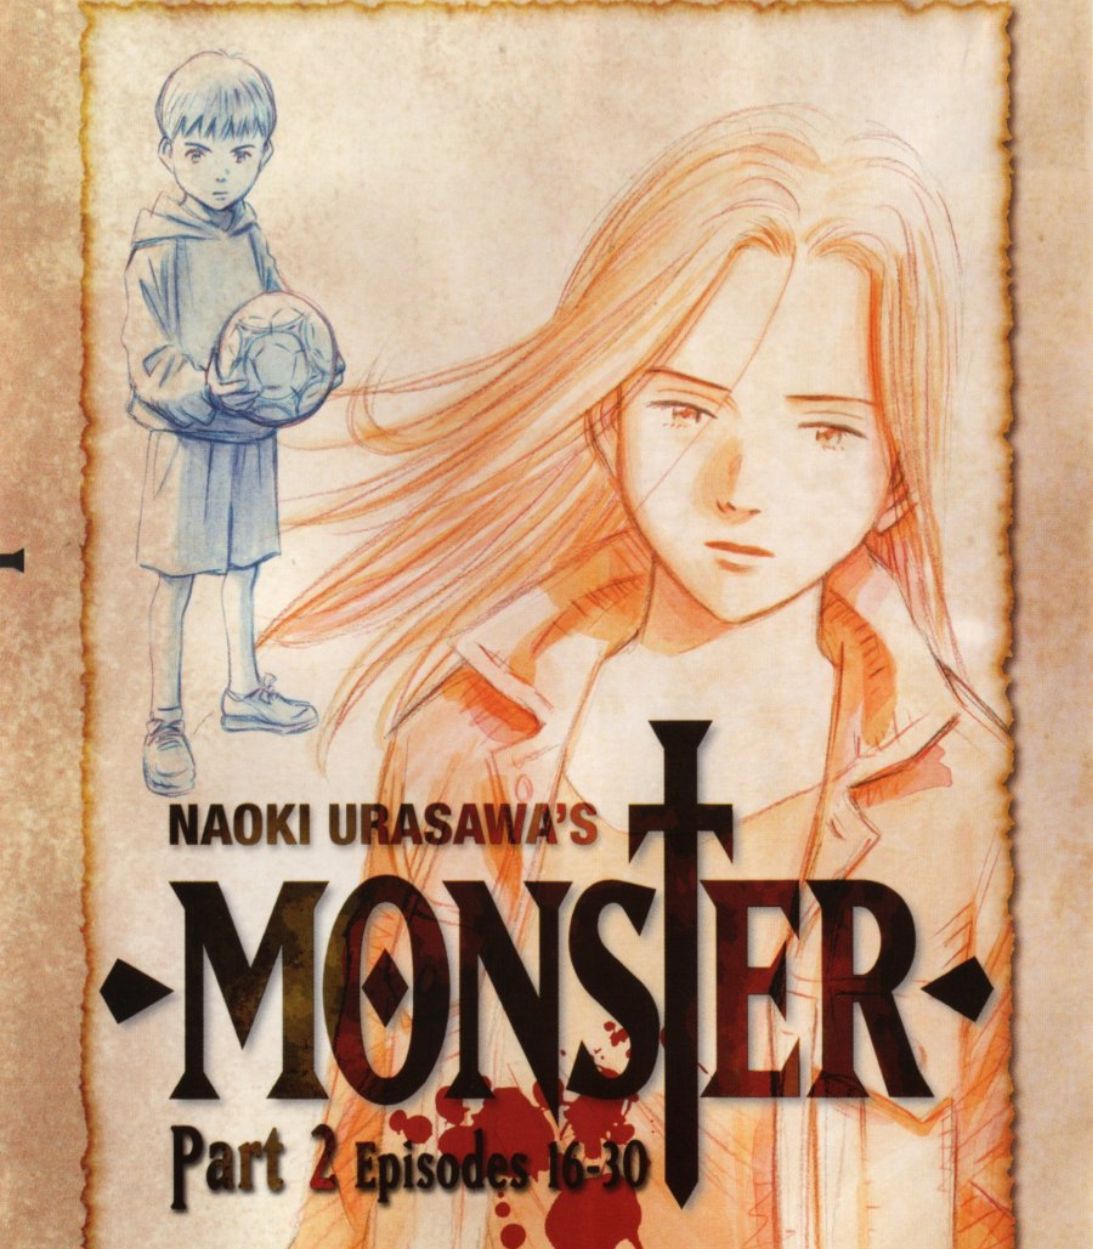 DVD for the anime Monster.